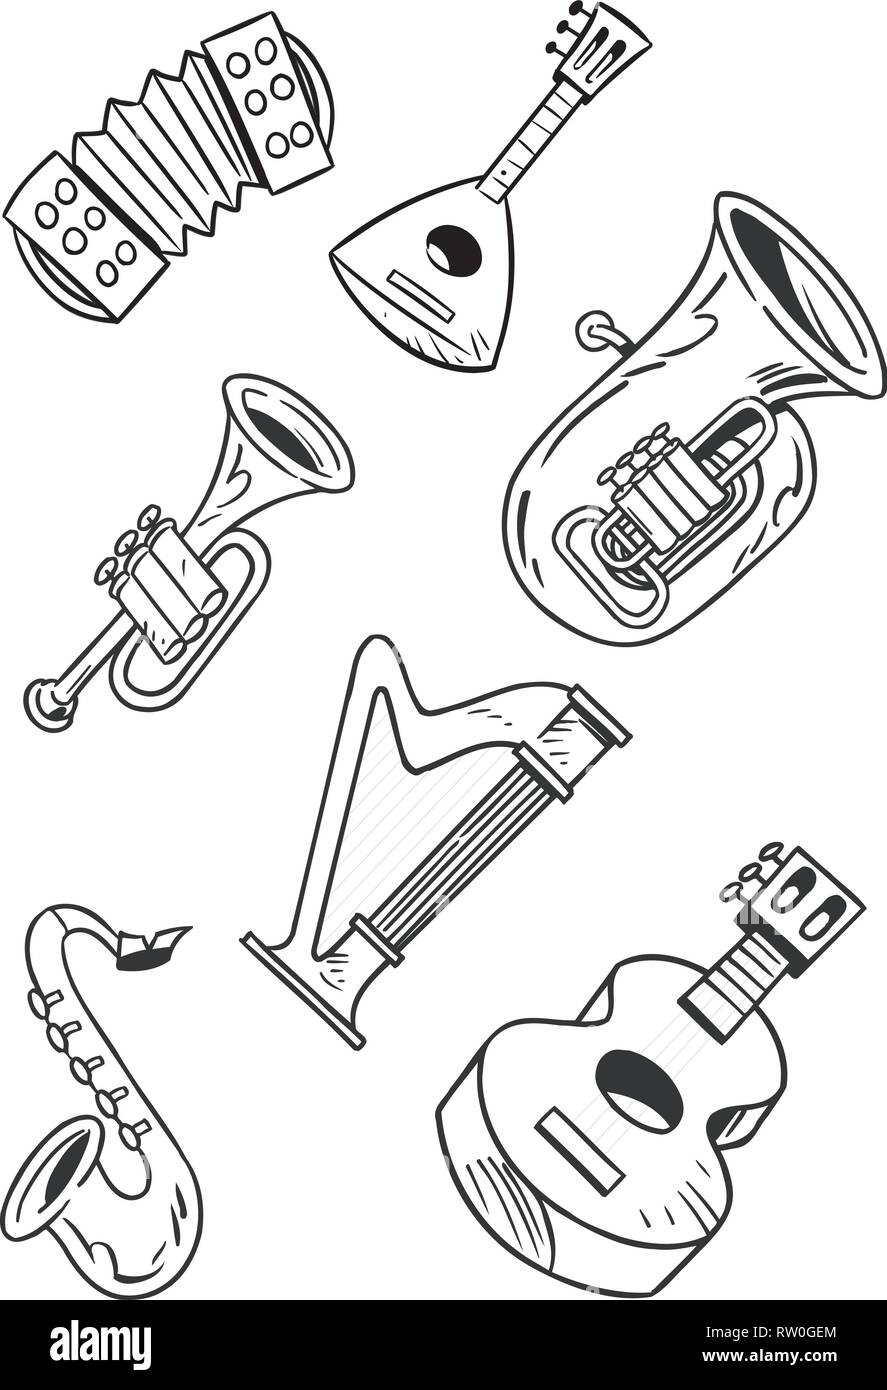 Instrumentos musicales de viento Imágenes de stock en blanco y negro - Alamy